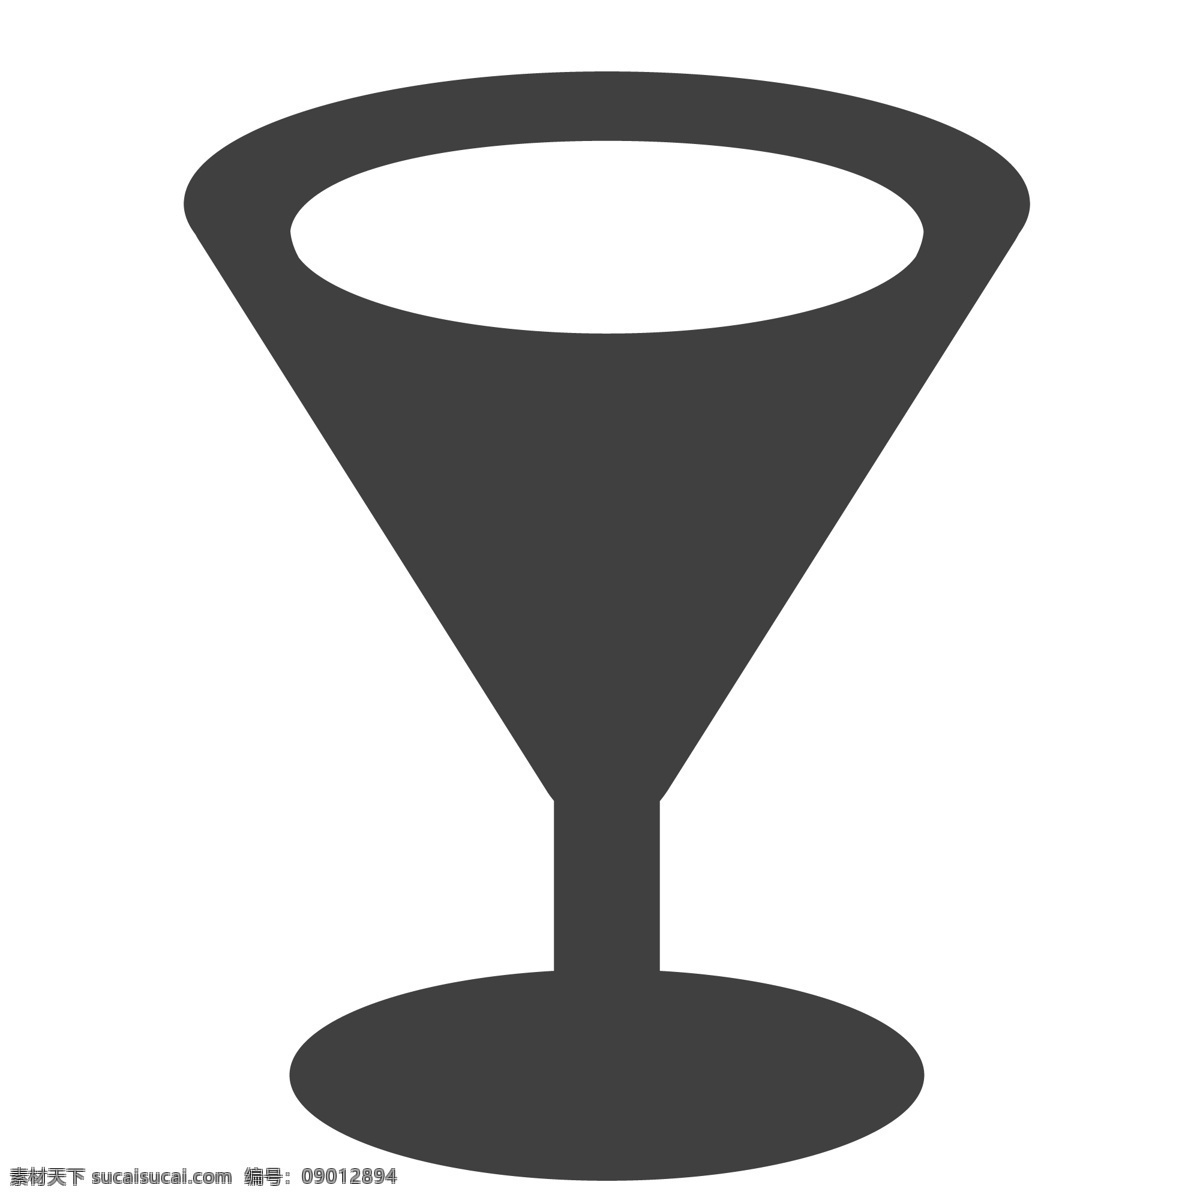 一个 黑色 酒杯 杯子 卡通 生活图标 卡通图标 黑色的图标 手机图标 智能图标设计